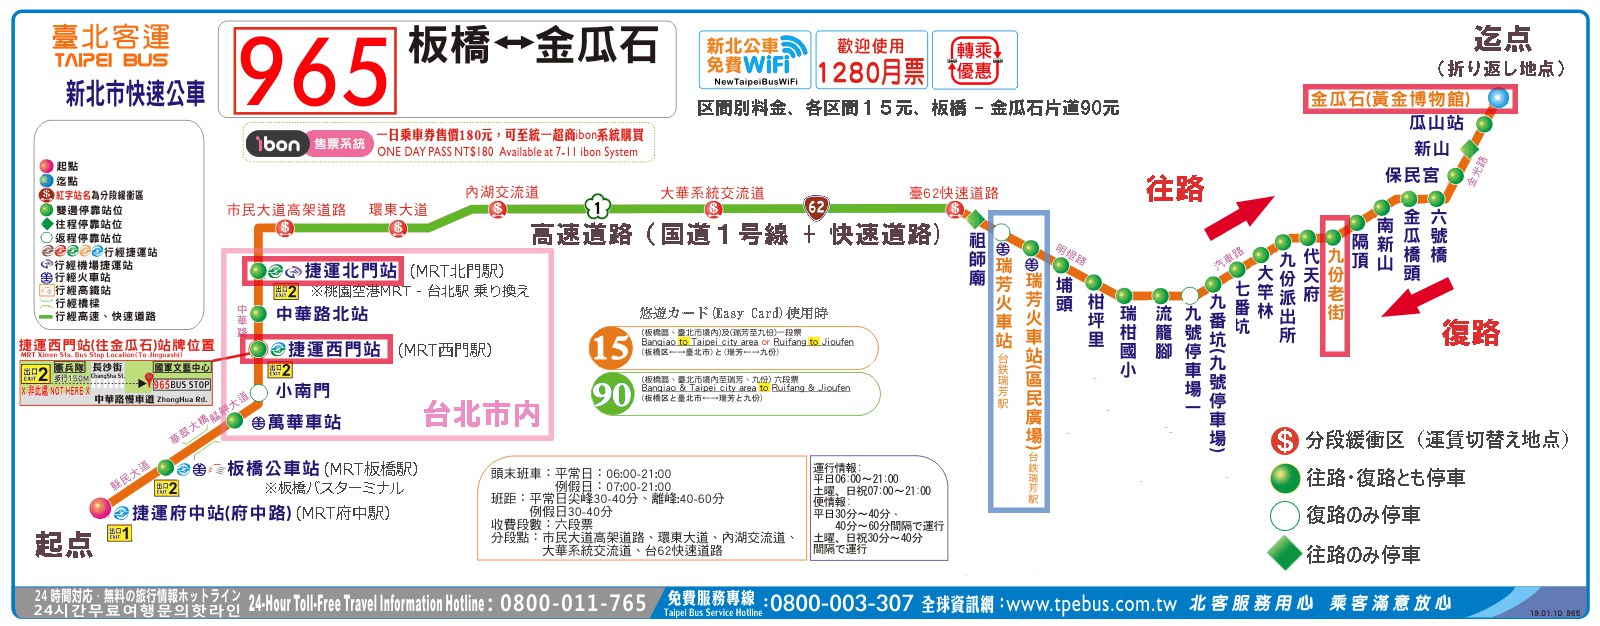 　965番路線図<br />板橋 - 金瓜石